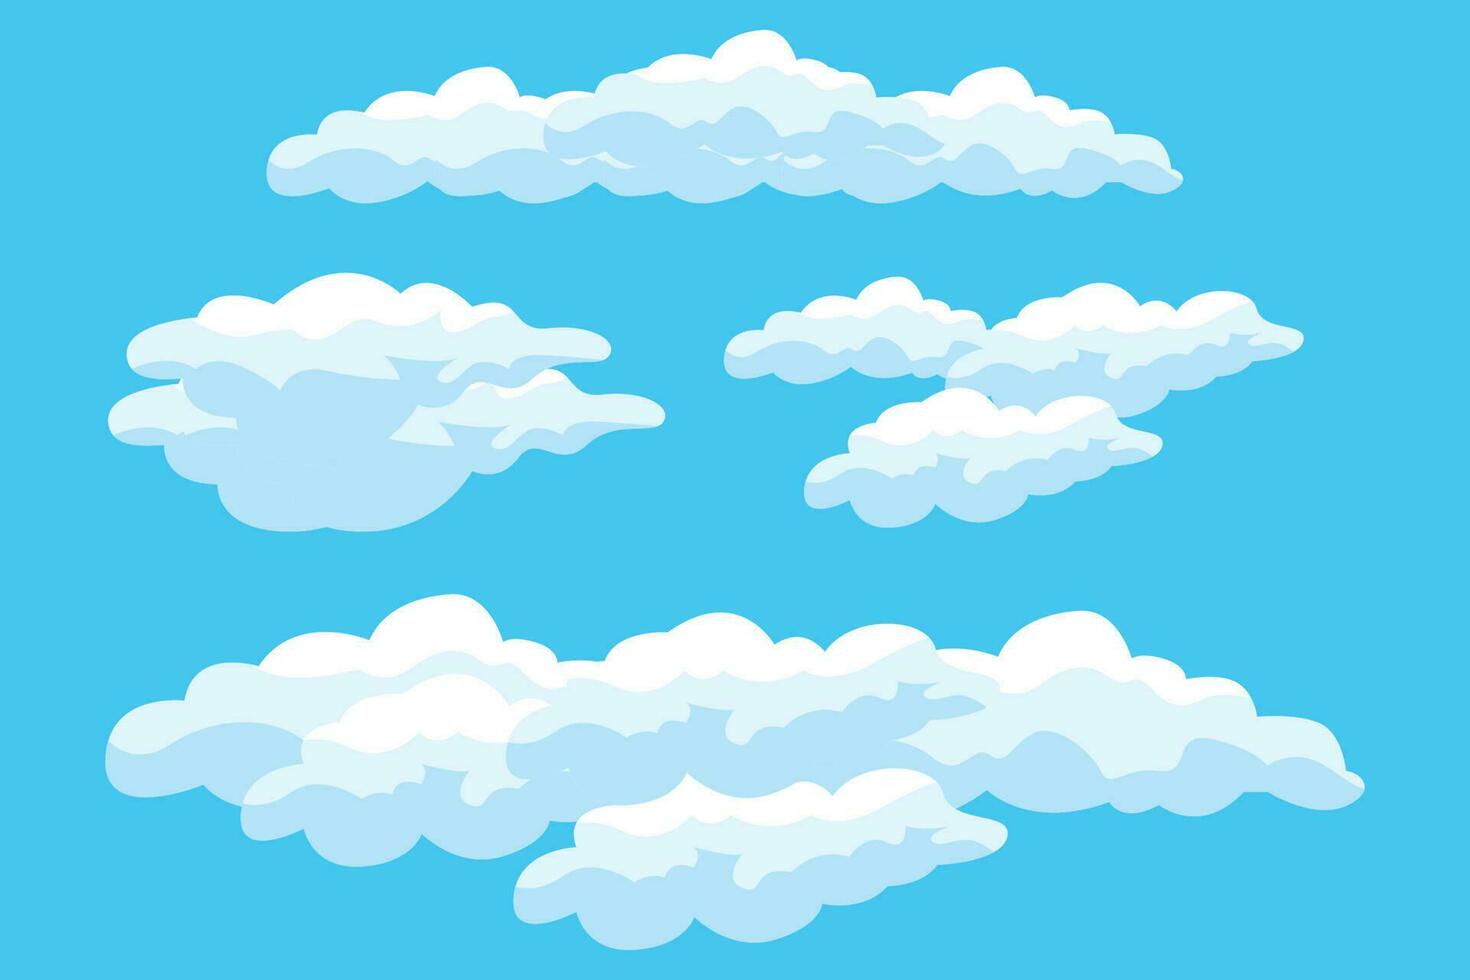 diseño de fondo de nube, ilustración de paisaje de cielo, vector de decoración, pancartas y carteles